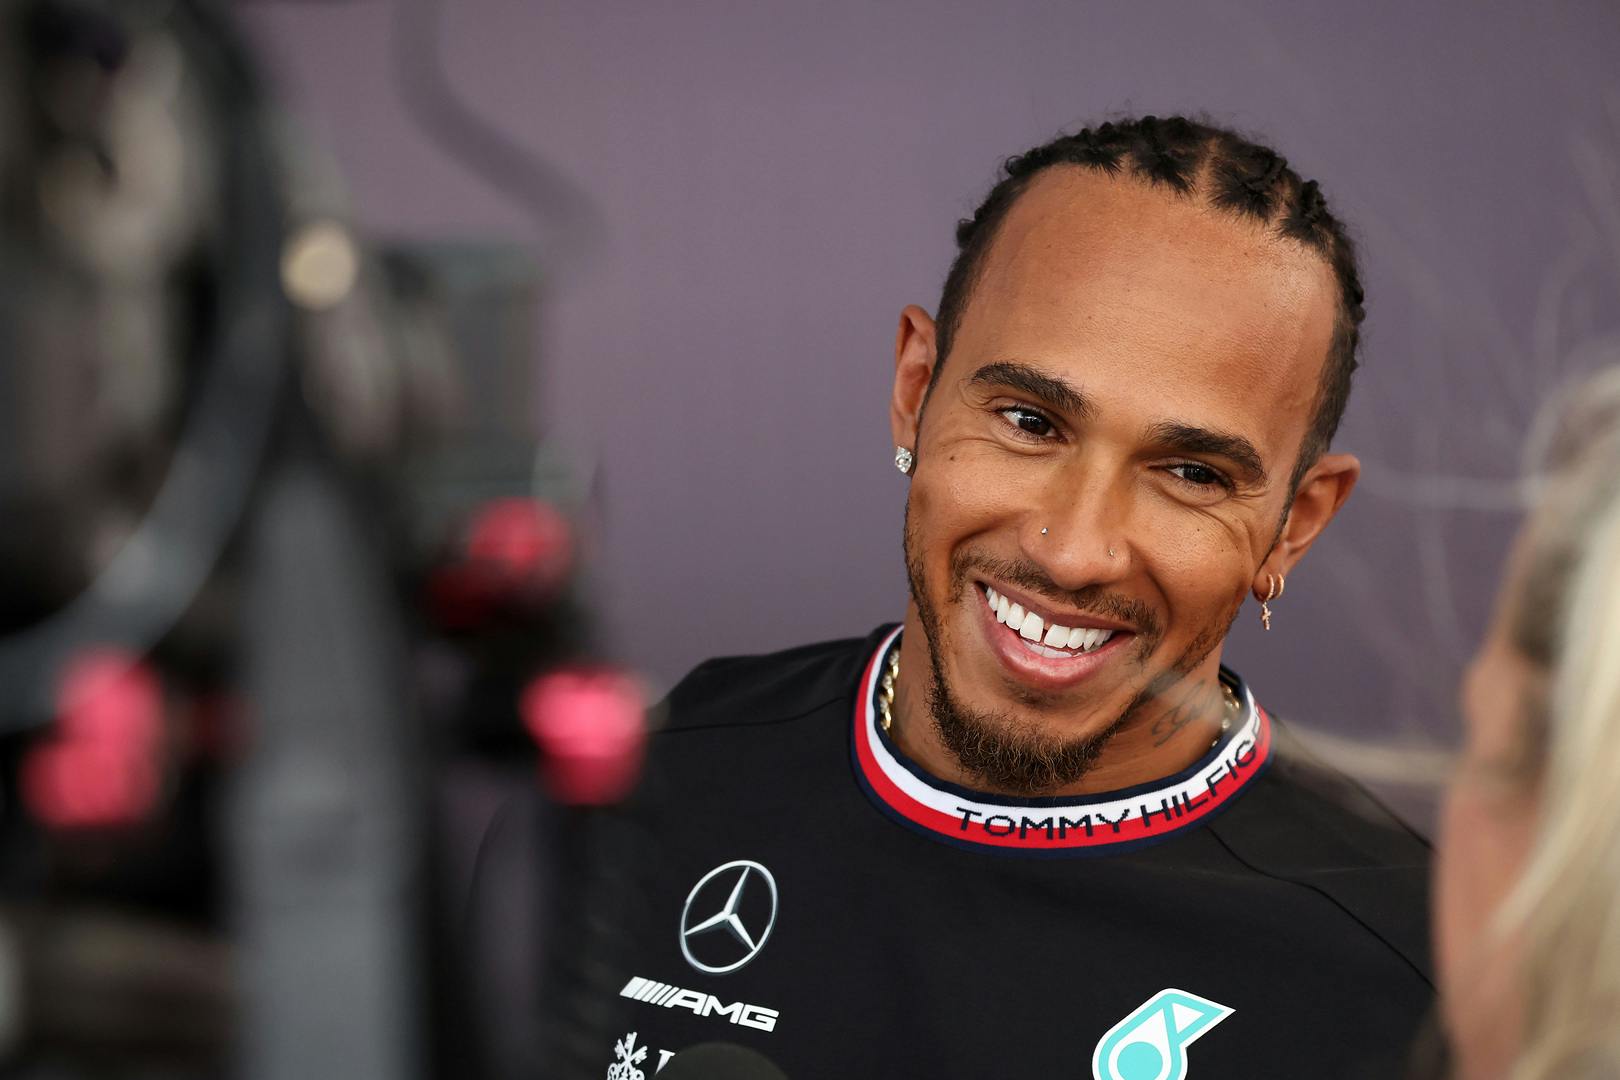 Hamilton uważa, że FIA musi popracować nad wizerunkiem i komunikacją